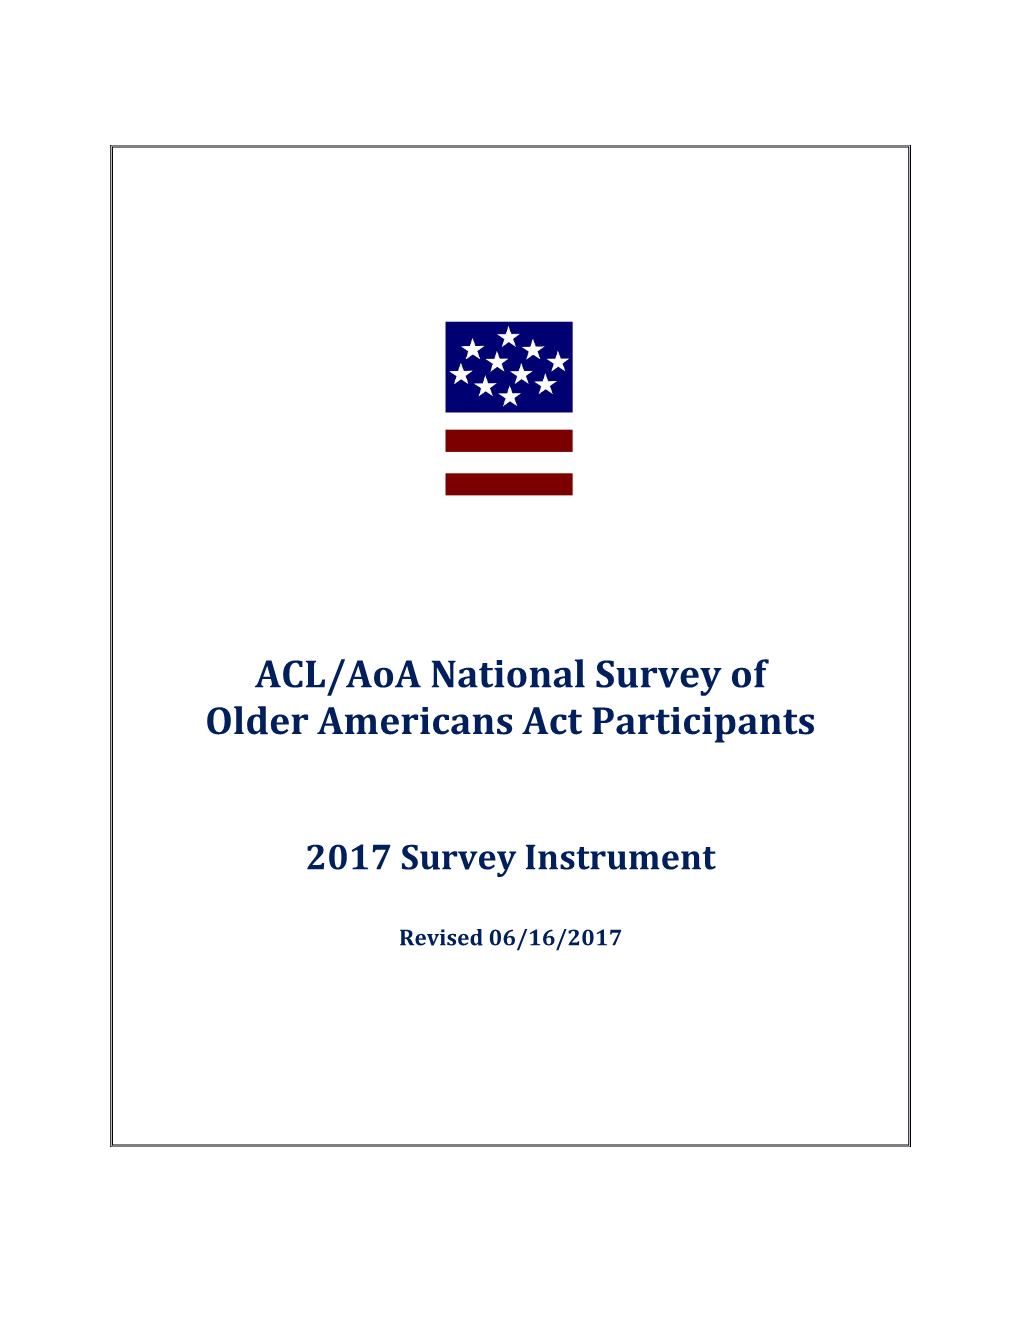 National Survey of Older Americans Act Participants: Questionnaire/Survey Instrument